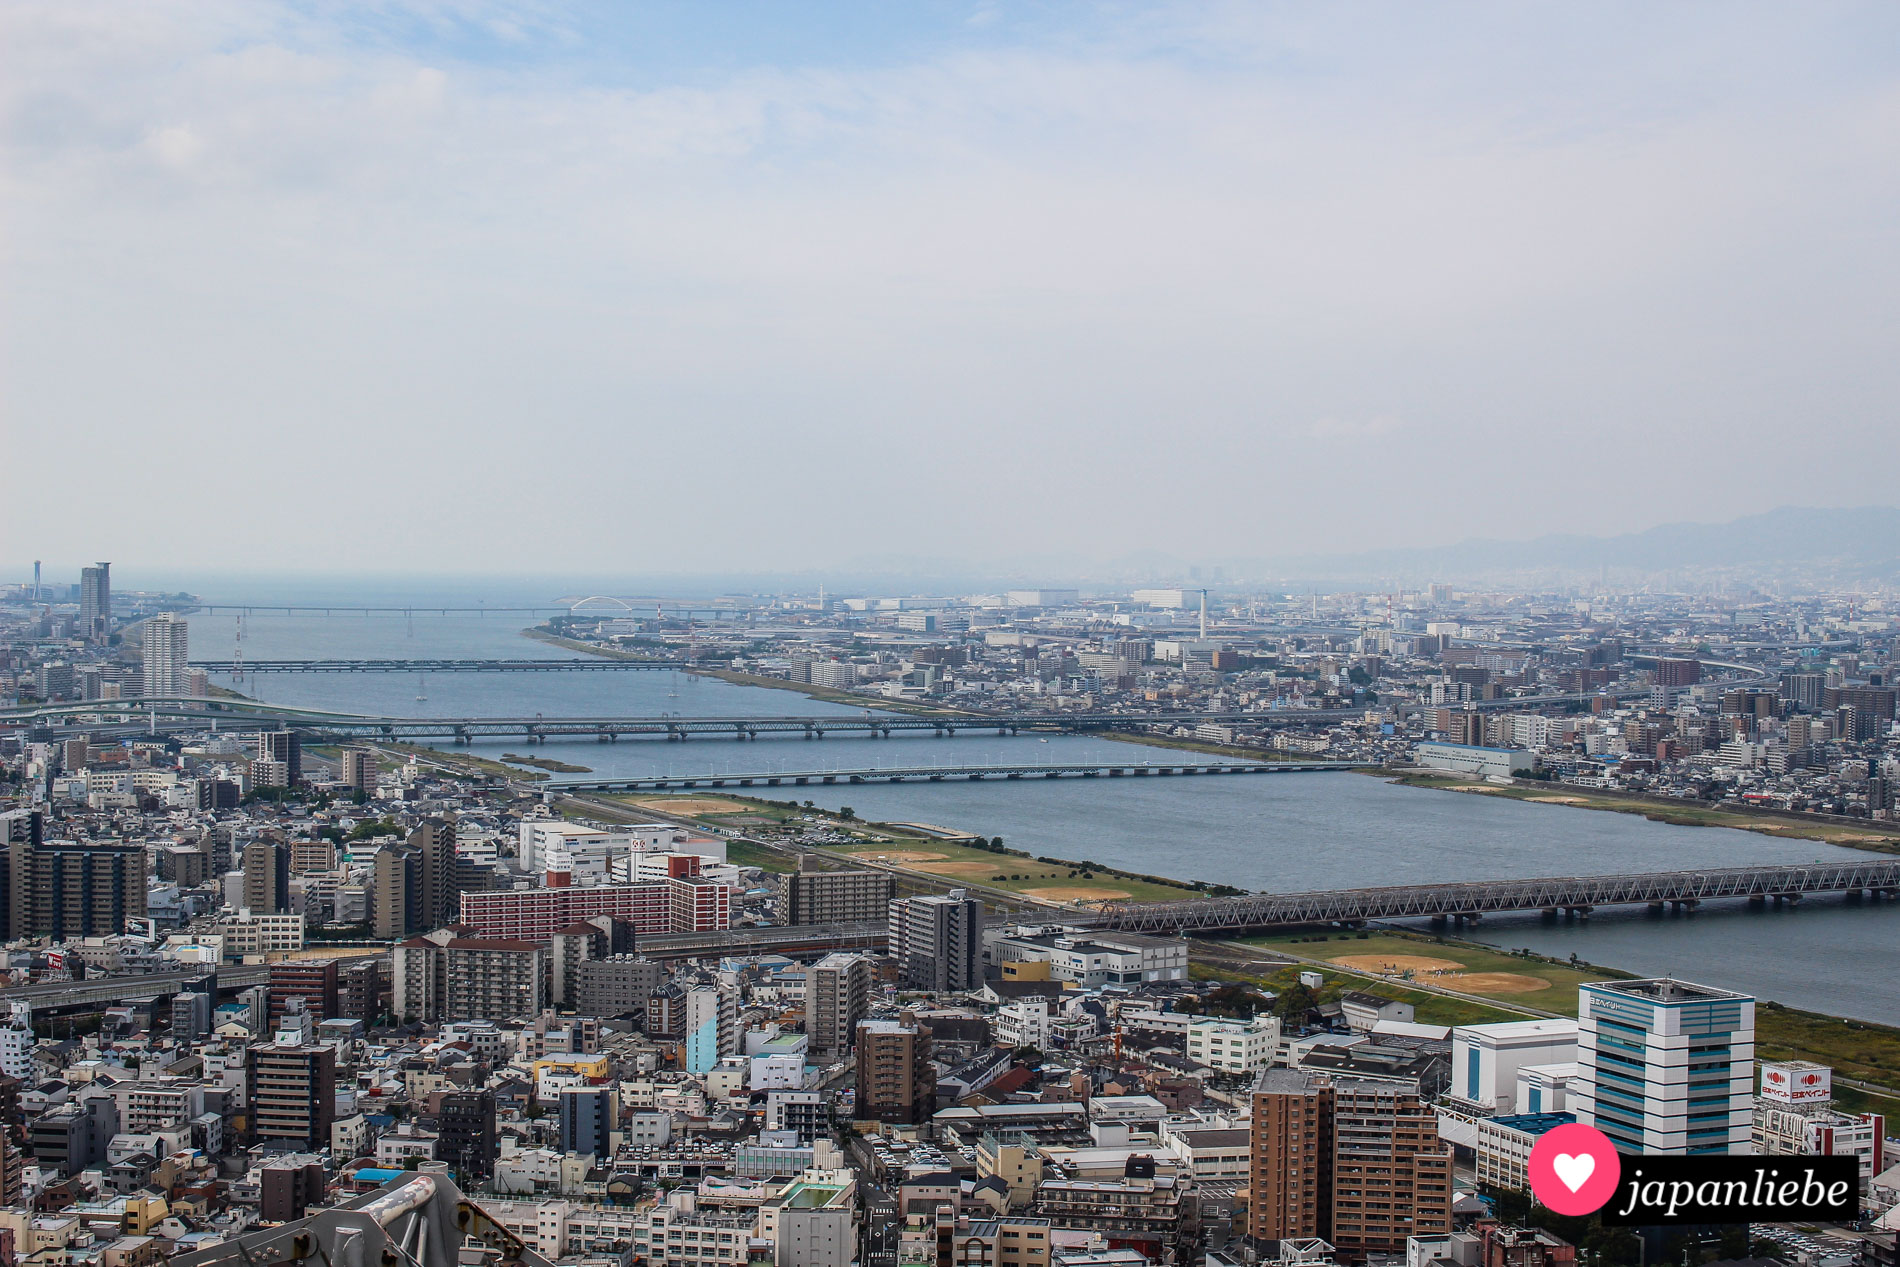 Ōsaka liegt am Yodo-gawa-Fluss. Die Aussichtsplattform des Umeda Sky Buildings bietet einen tollen Panoramablick über die Millionenmetropole.